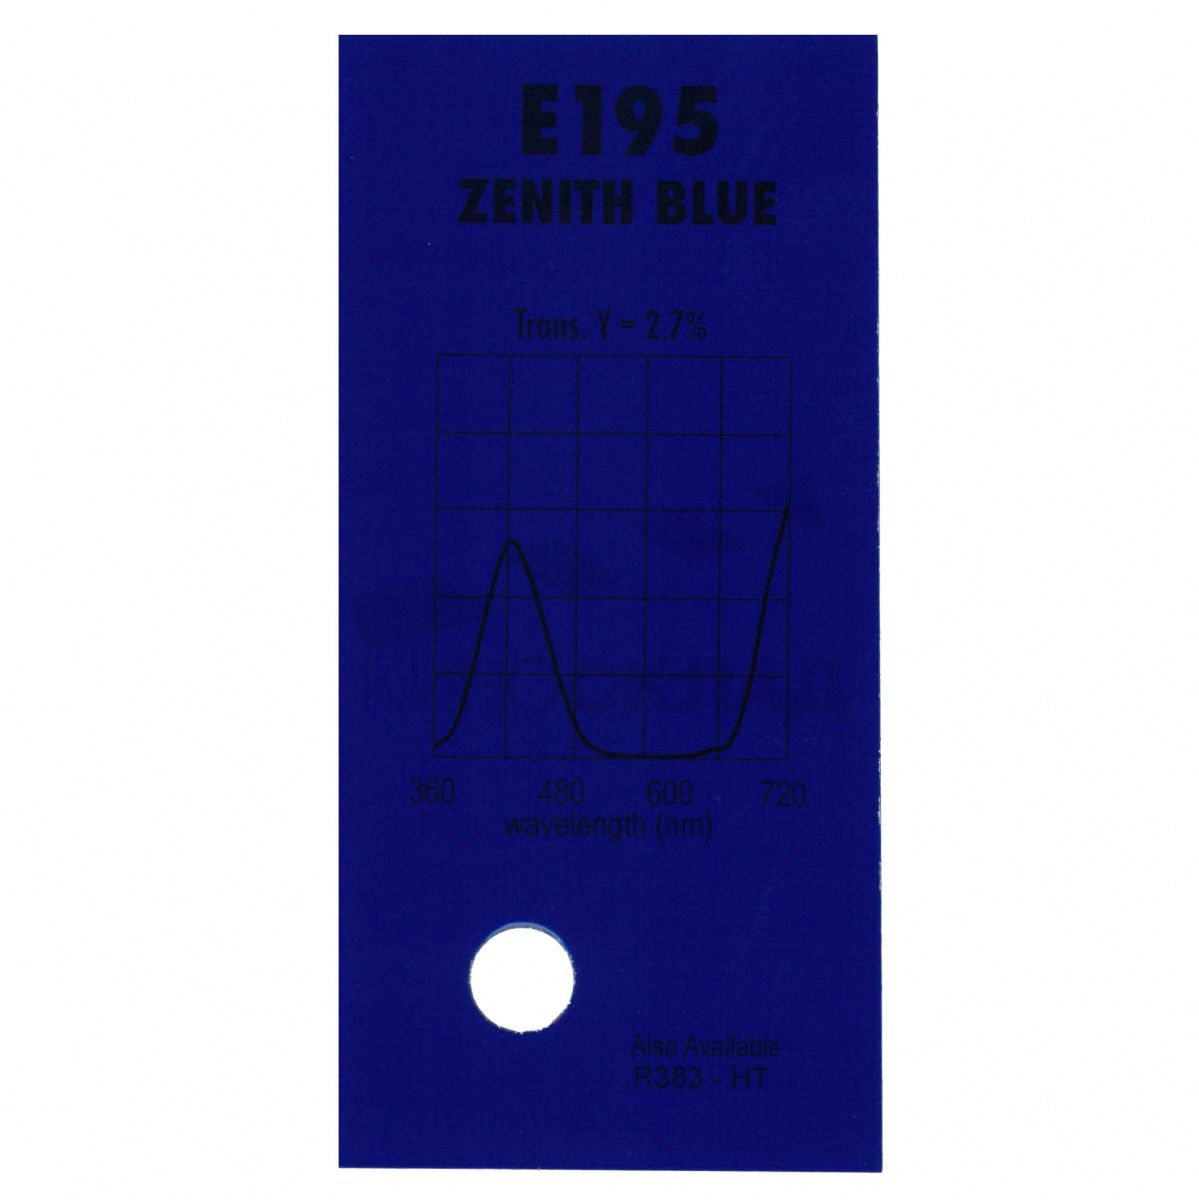 Детальная картинка товара Lee Filters # 195 Zenith Blue в магазине Музыкальная Тема